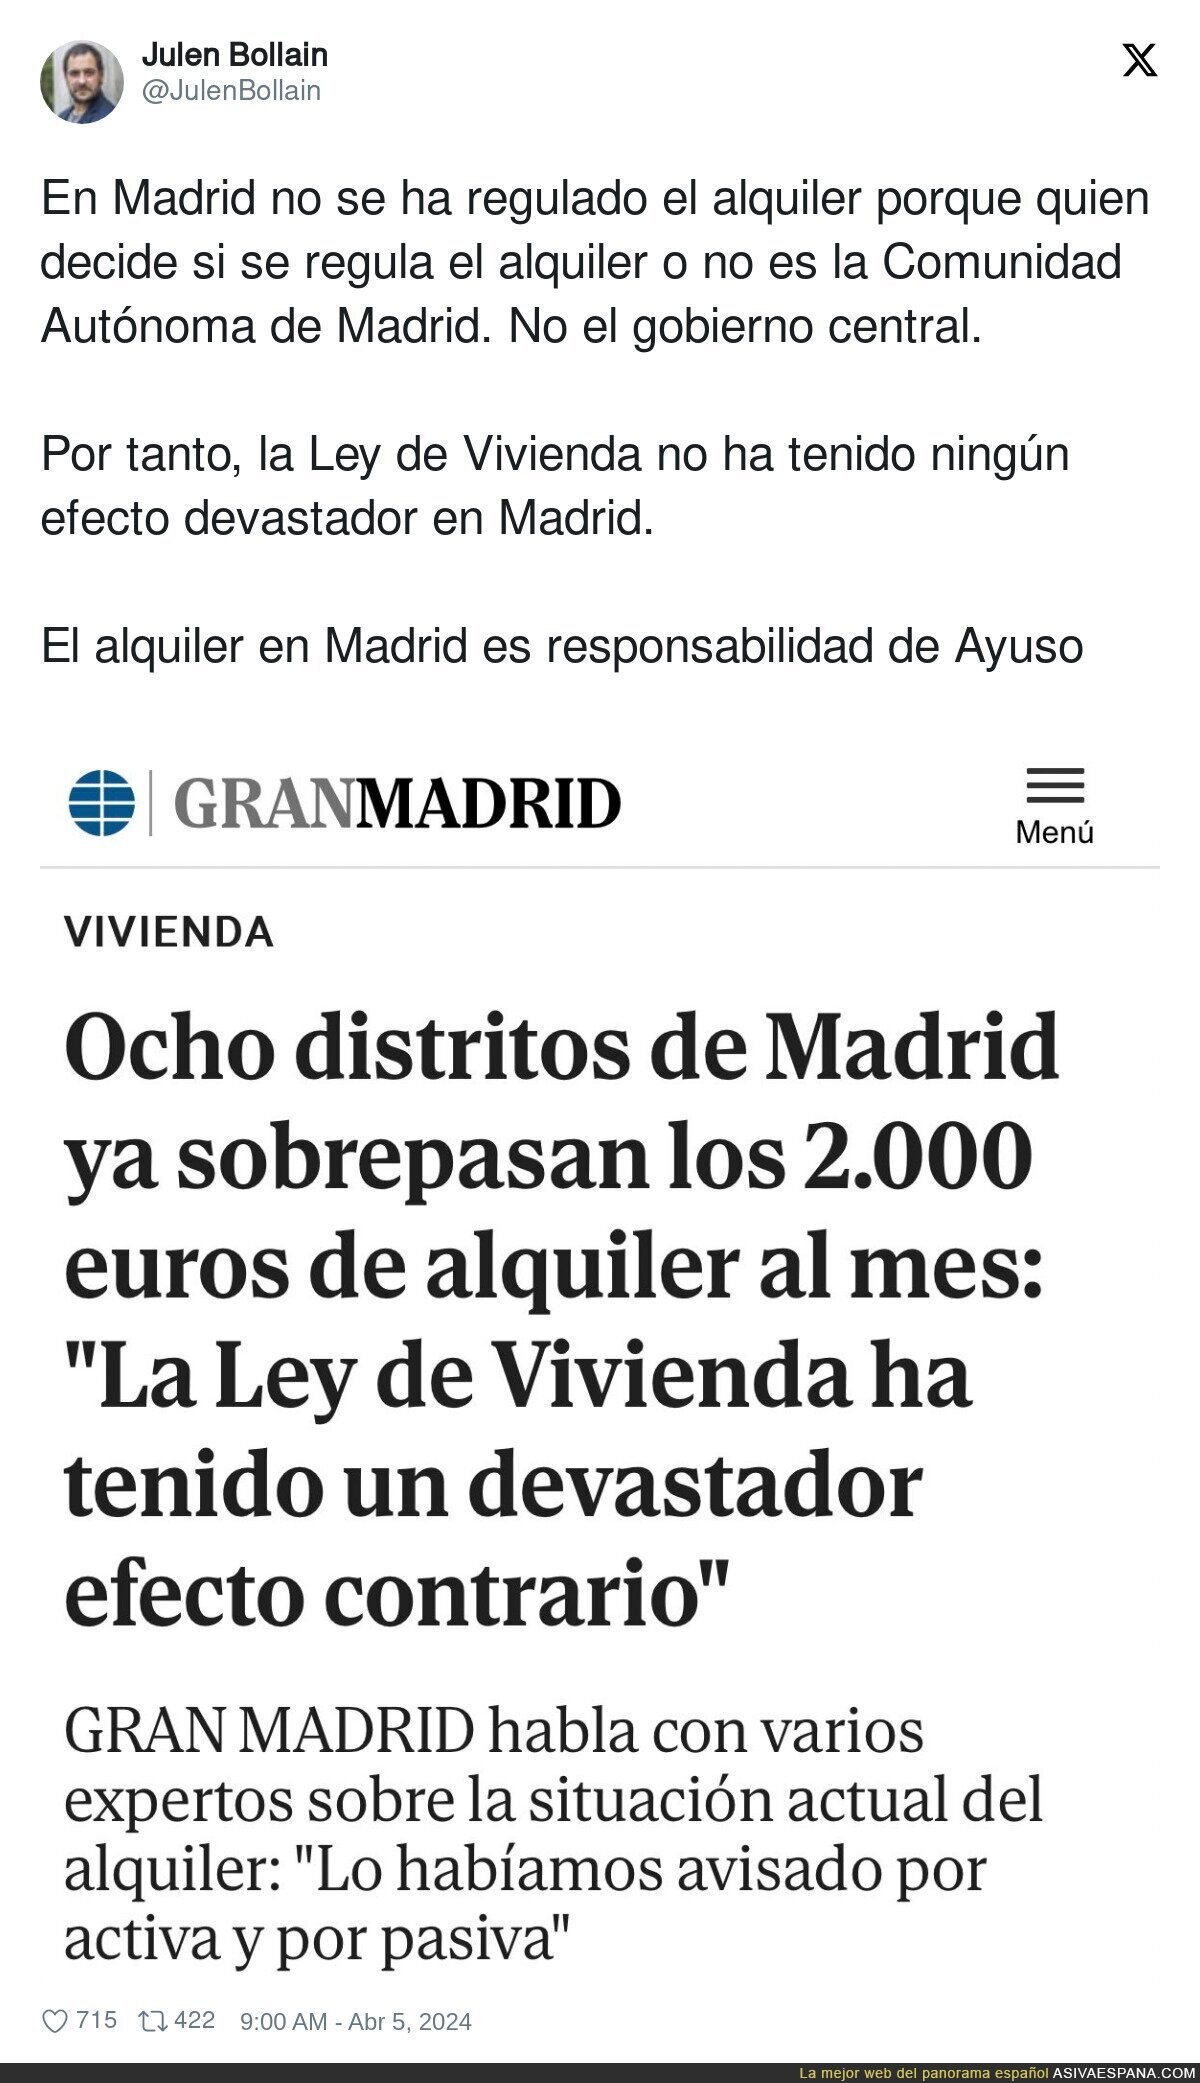 No se puede vivir en Madrid